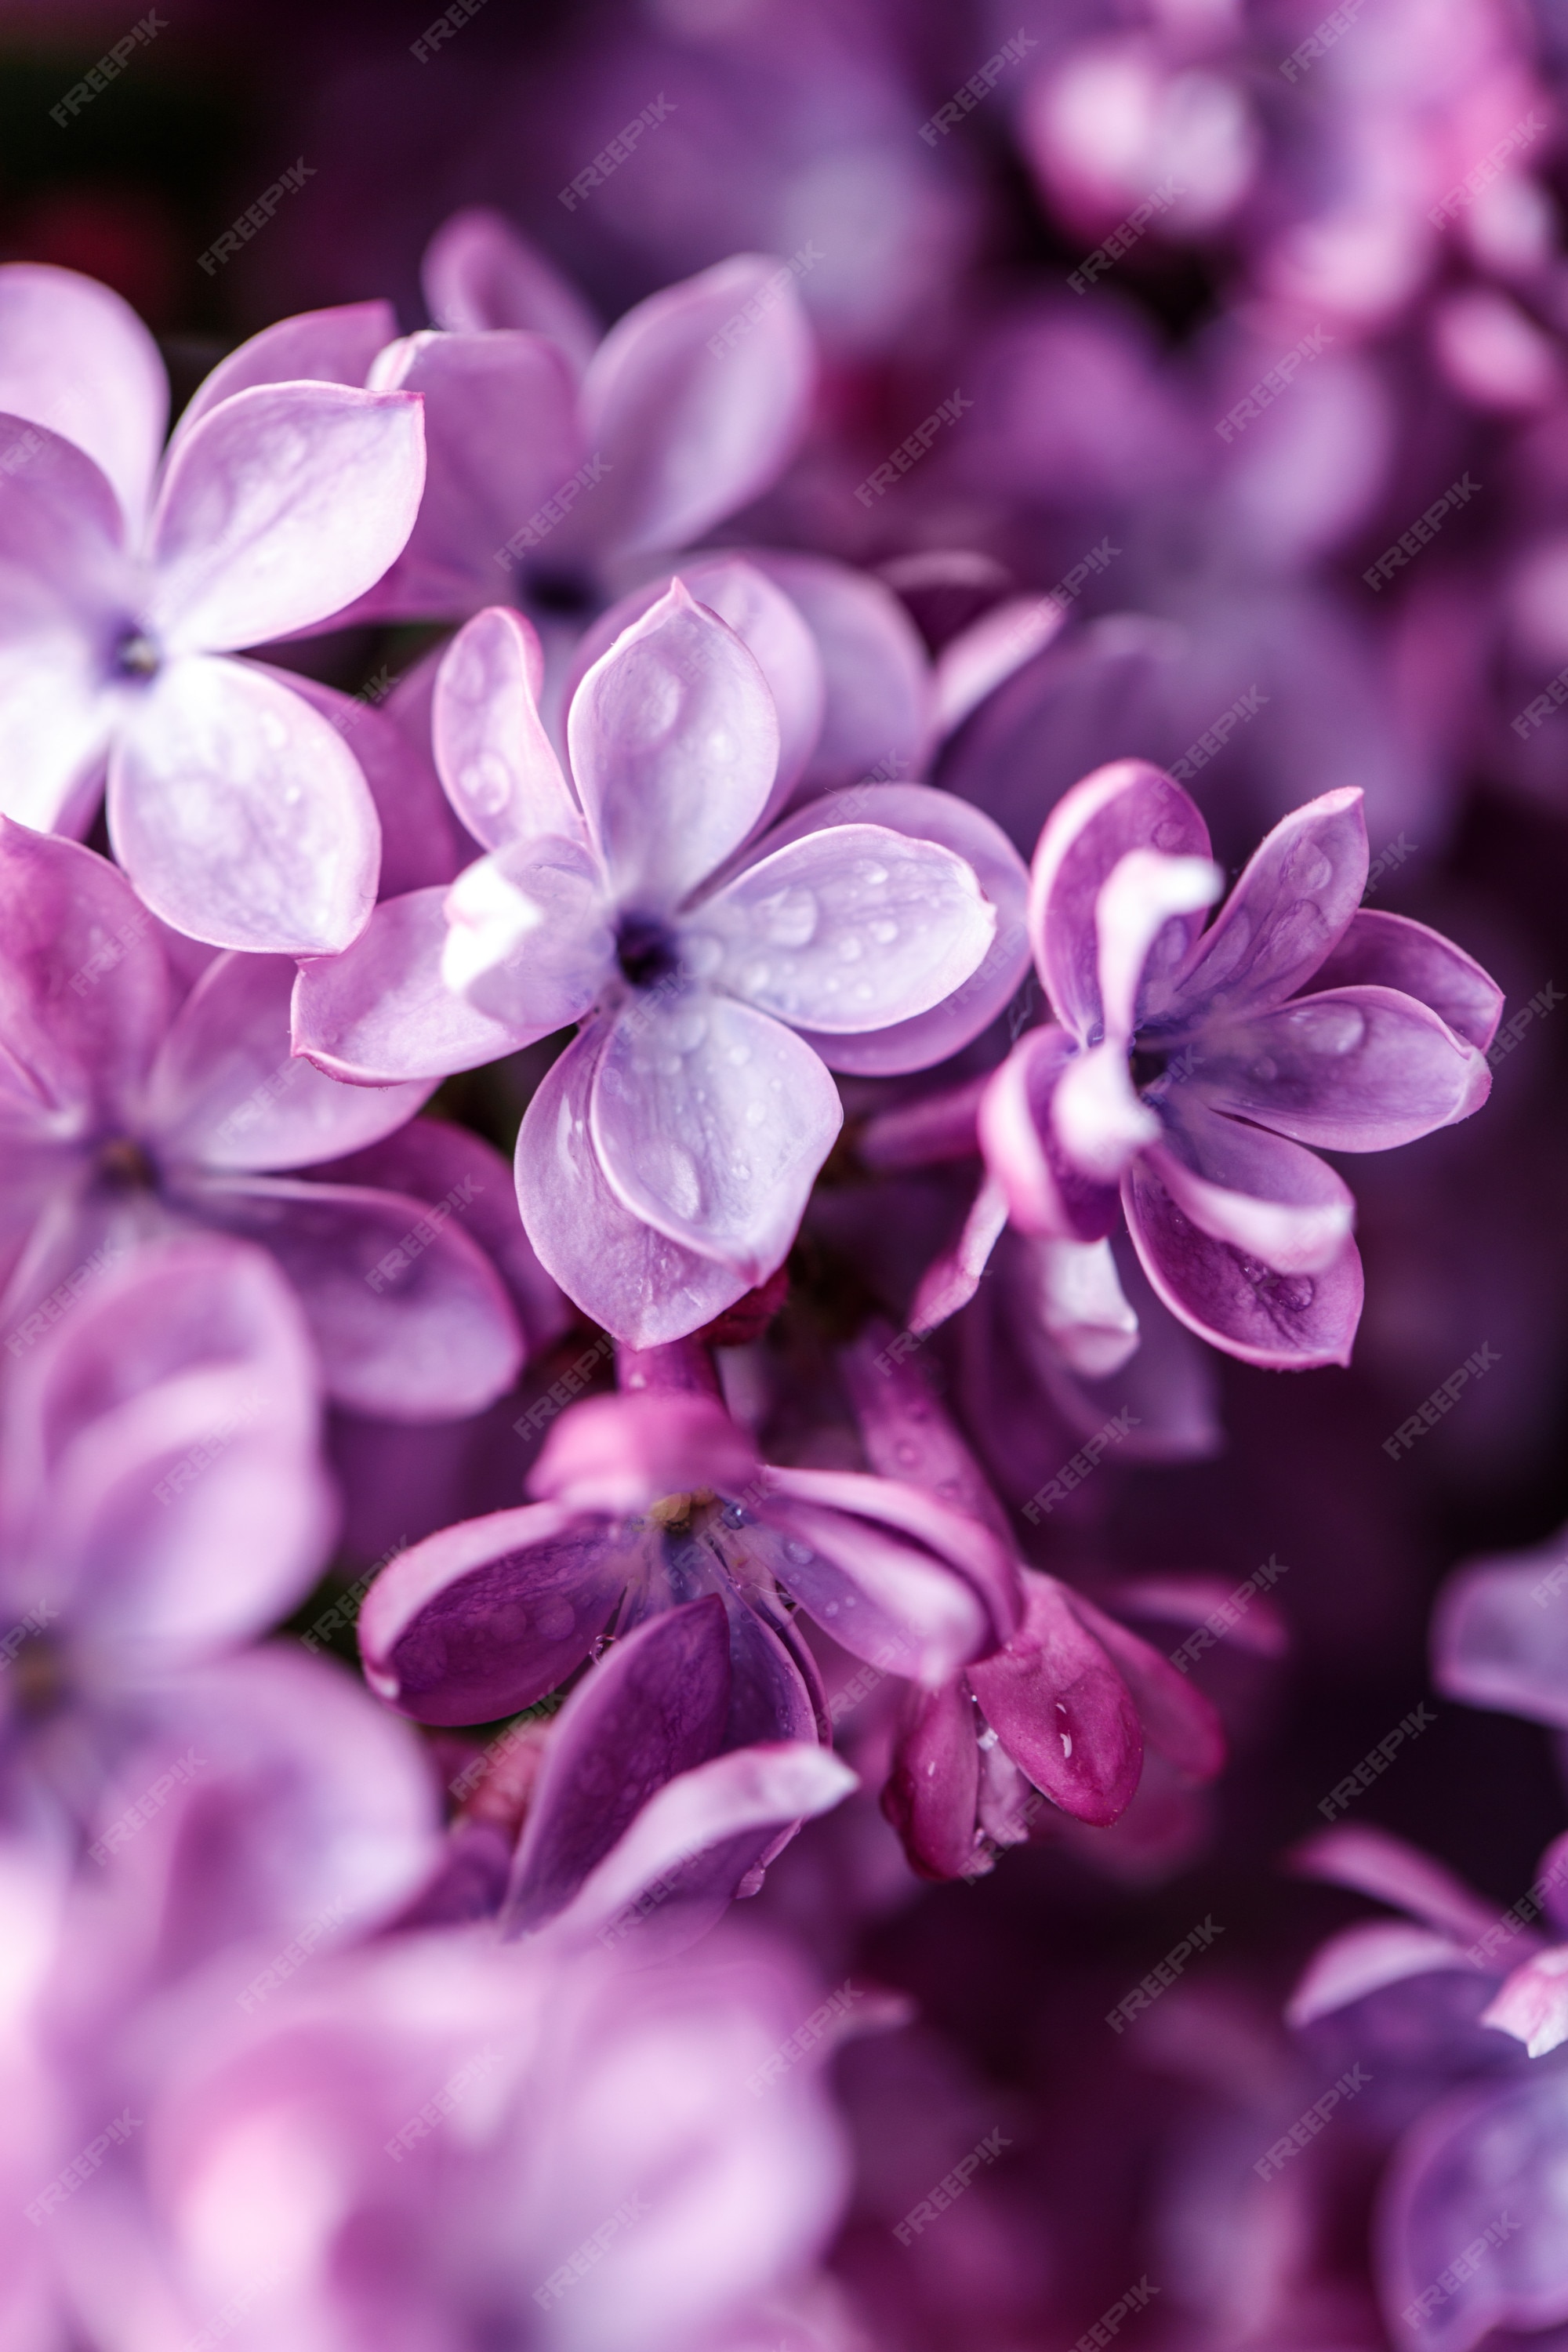 Khám phá bức ảnh nền tím hoa phong lan đầy mê hoặc với sắc tím đậm nét trên nền lục ánh kim. Nét chuyên nghiệp và chất lượng của bức hình sẽ mang đến những trải nghiệm đáng nhớ cho bạn.